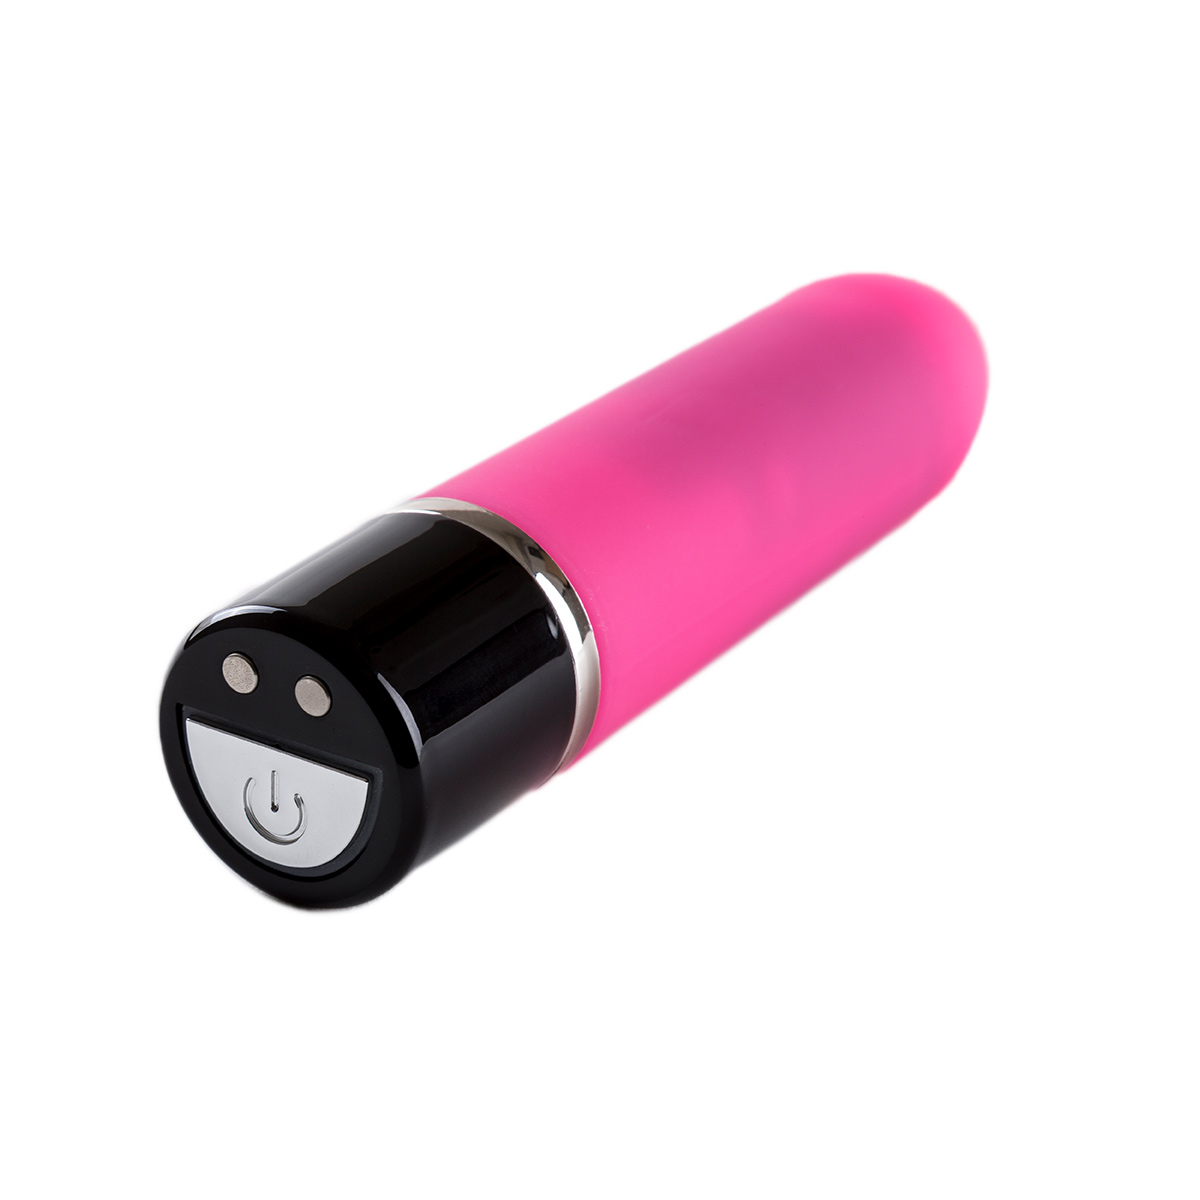 Vibrating-Bullet-Mag-Charge-V3-Pink-OPR-3090090-1